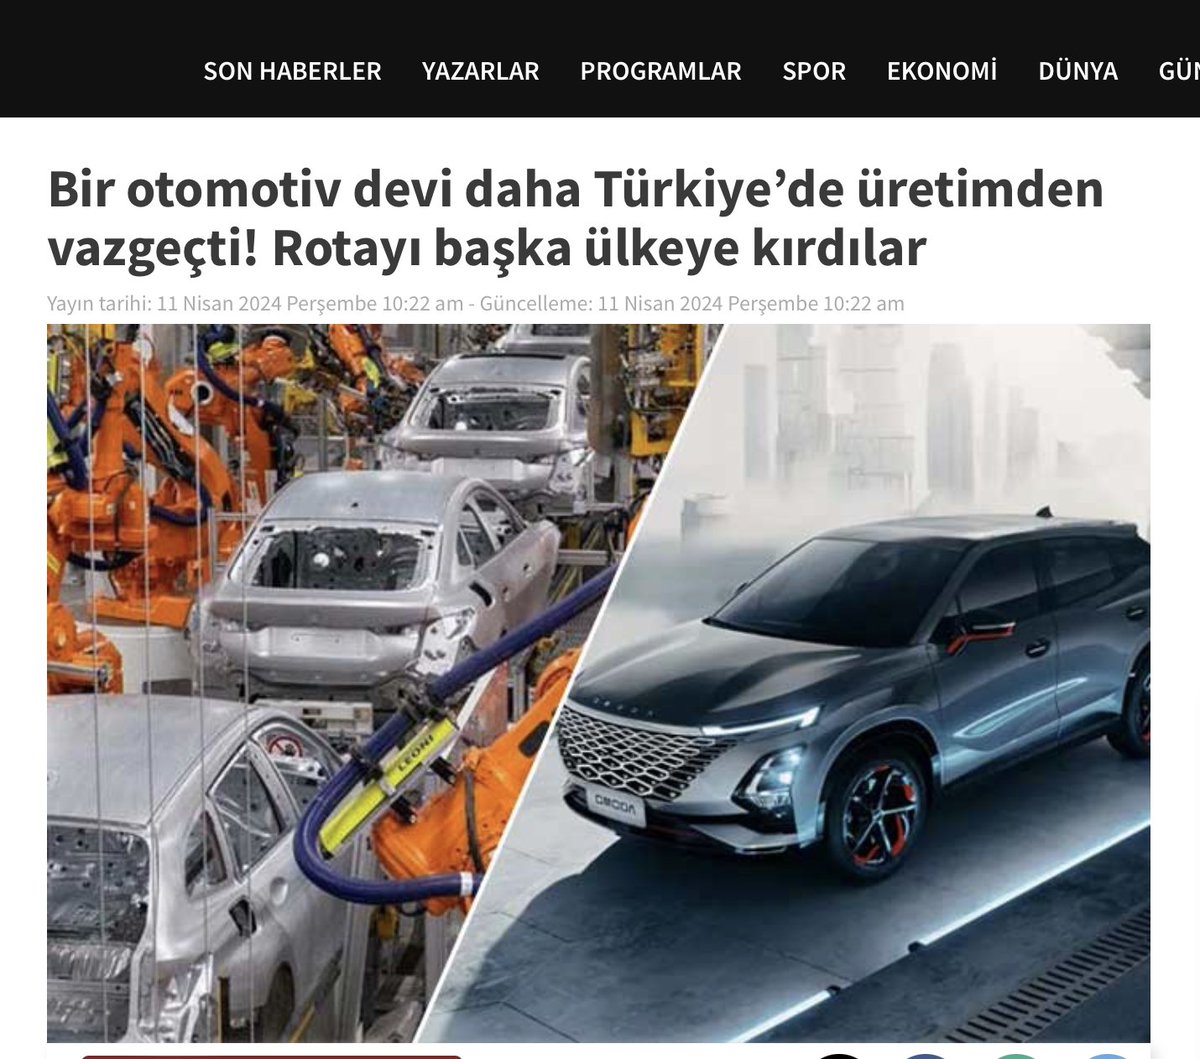 Çinli otomotiv devi Chery’nin Türkiye’de üretim yapma fikrinden vazgeçtiği öğrenildi. Dev firmanın, Türkiye yerine İspanya’da yatırım yapmayı hedeflediği iddia edildi. tele1.com.tr/bir-otomotiv-d…